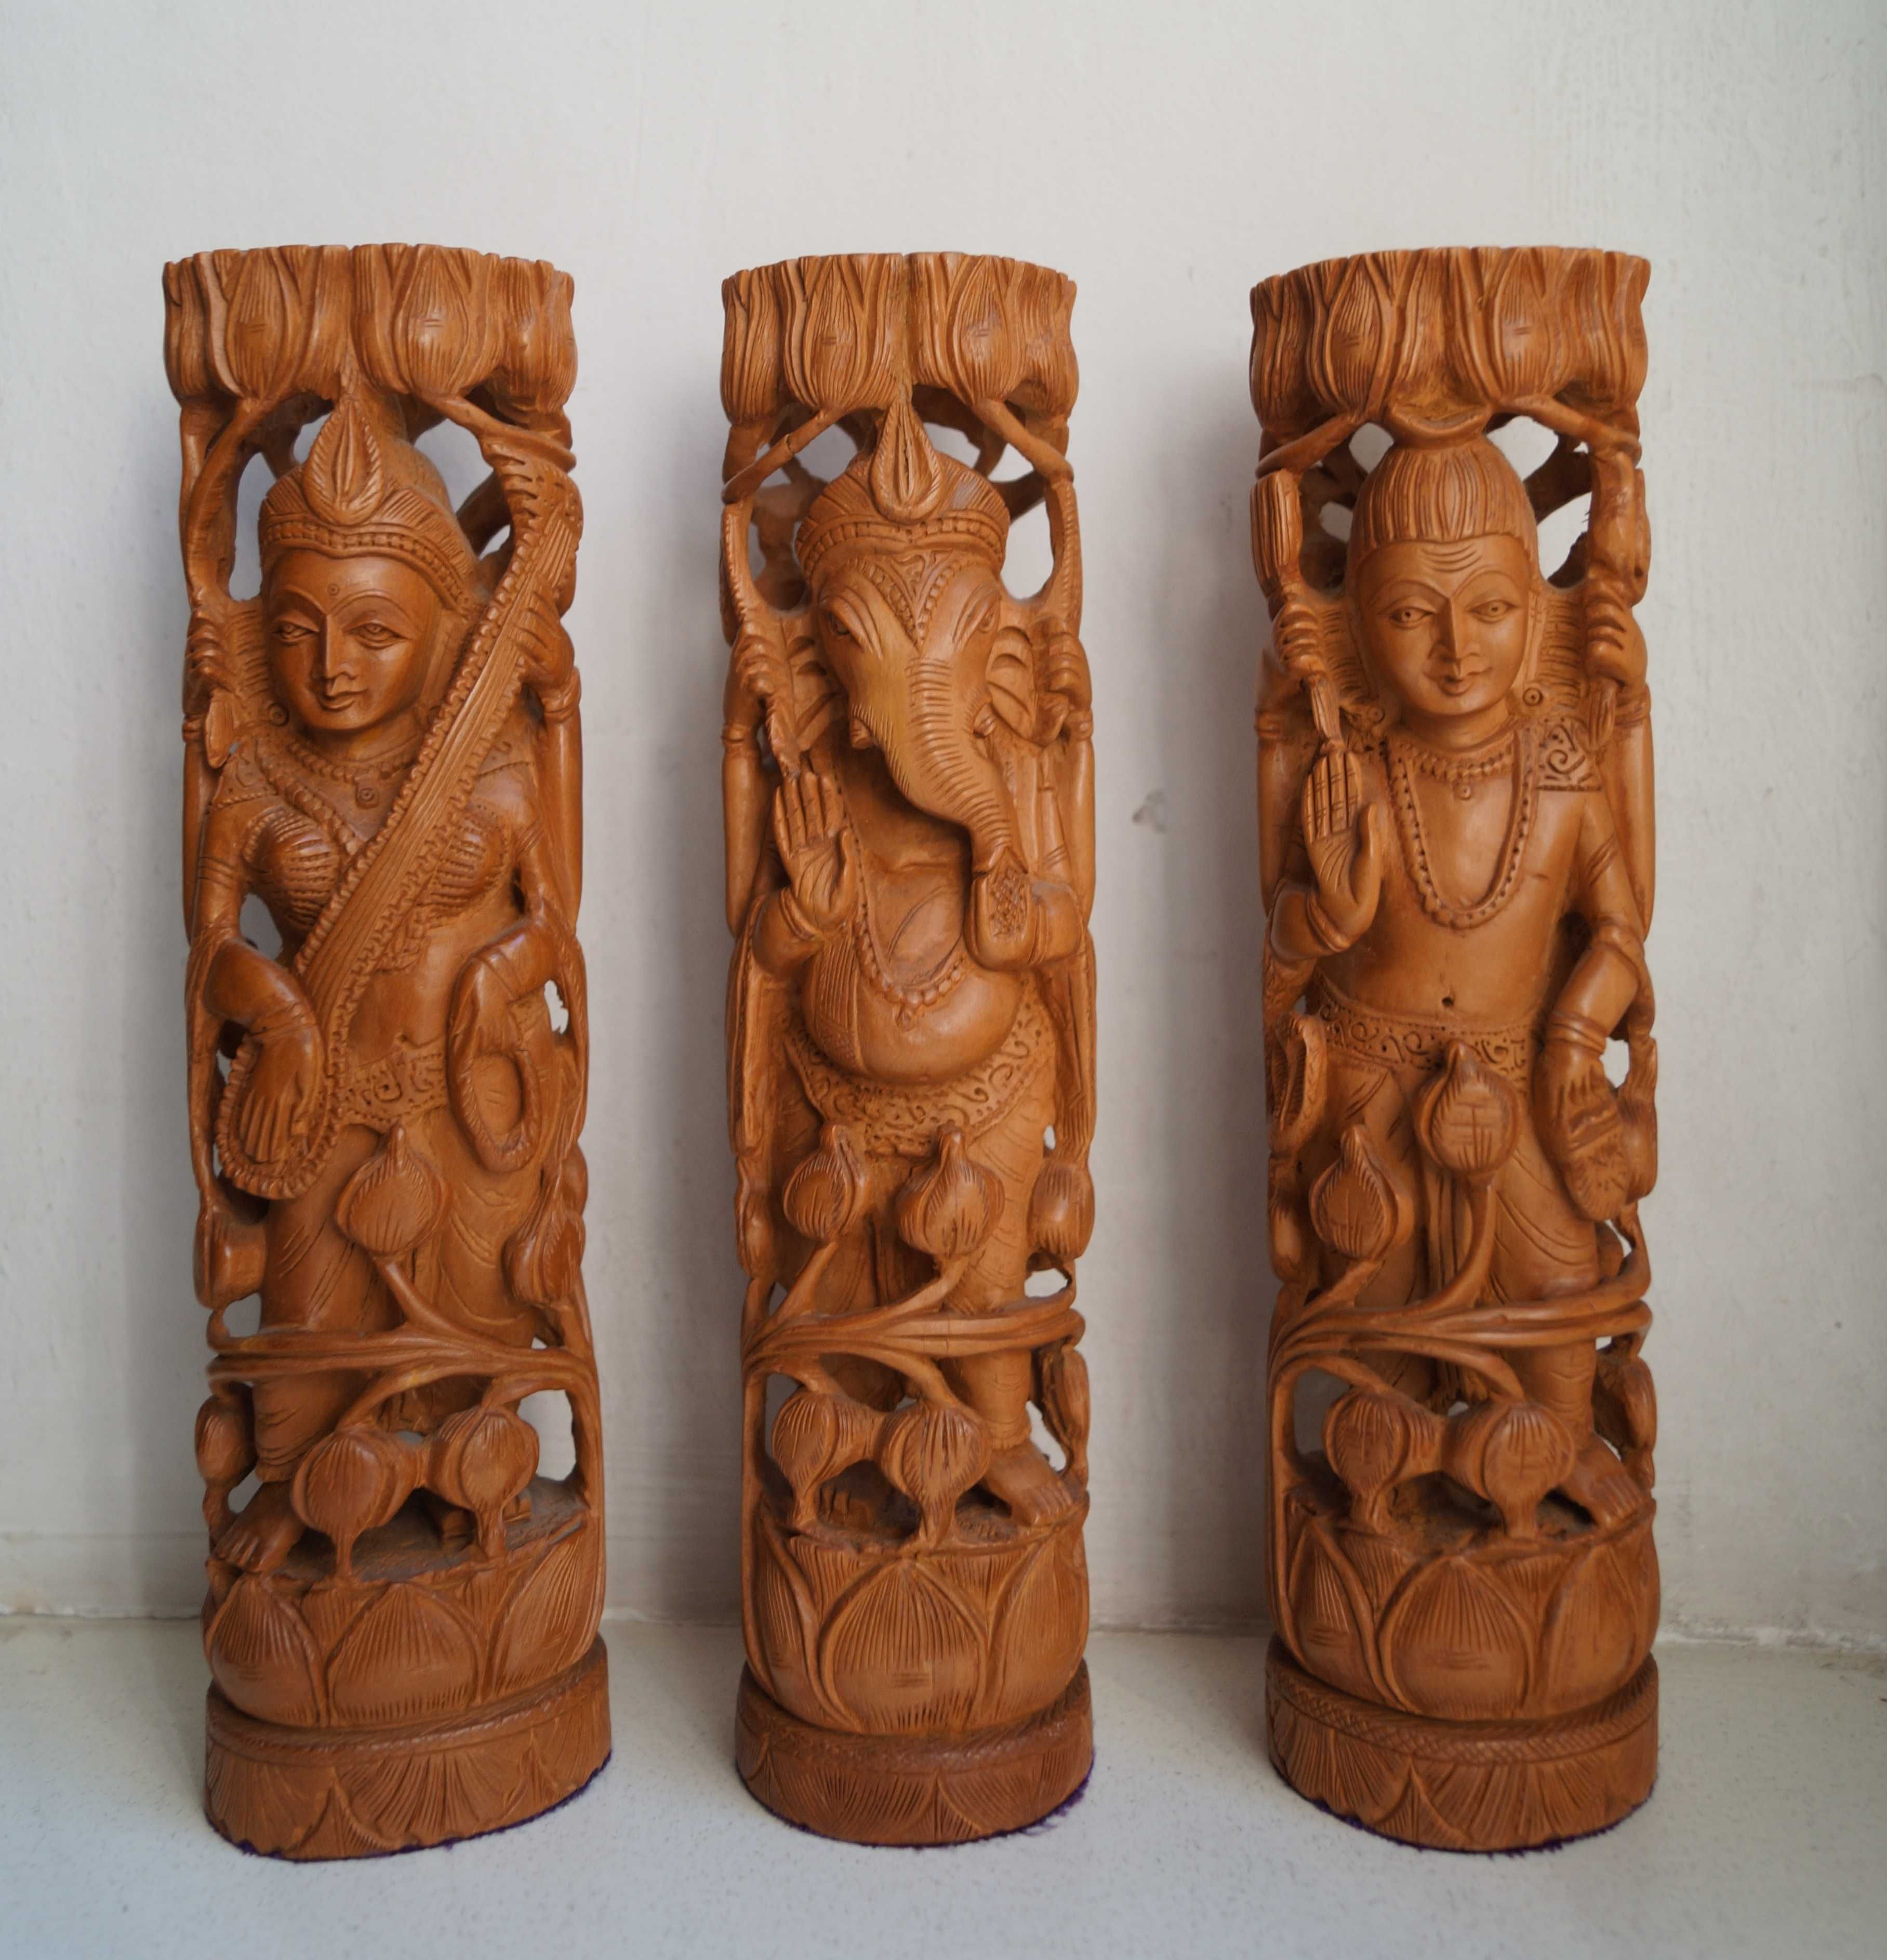 Винтажные сандаловое дерево фигурки индийские боги винтаж будда